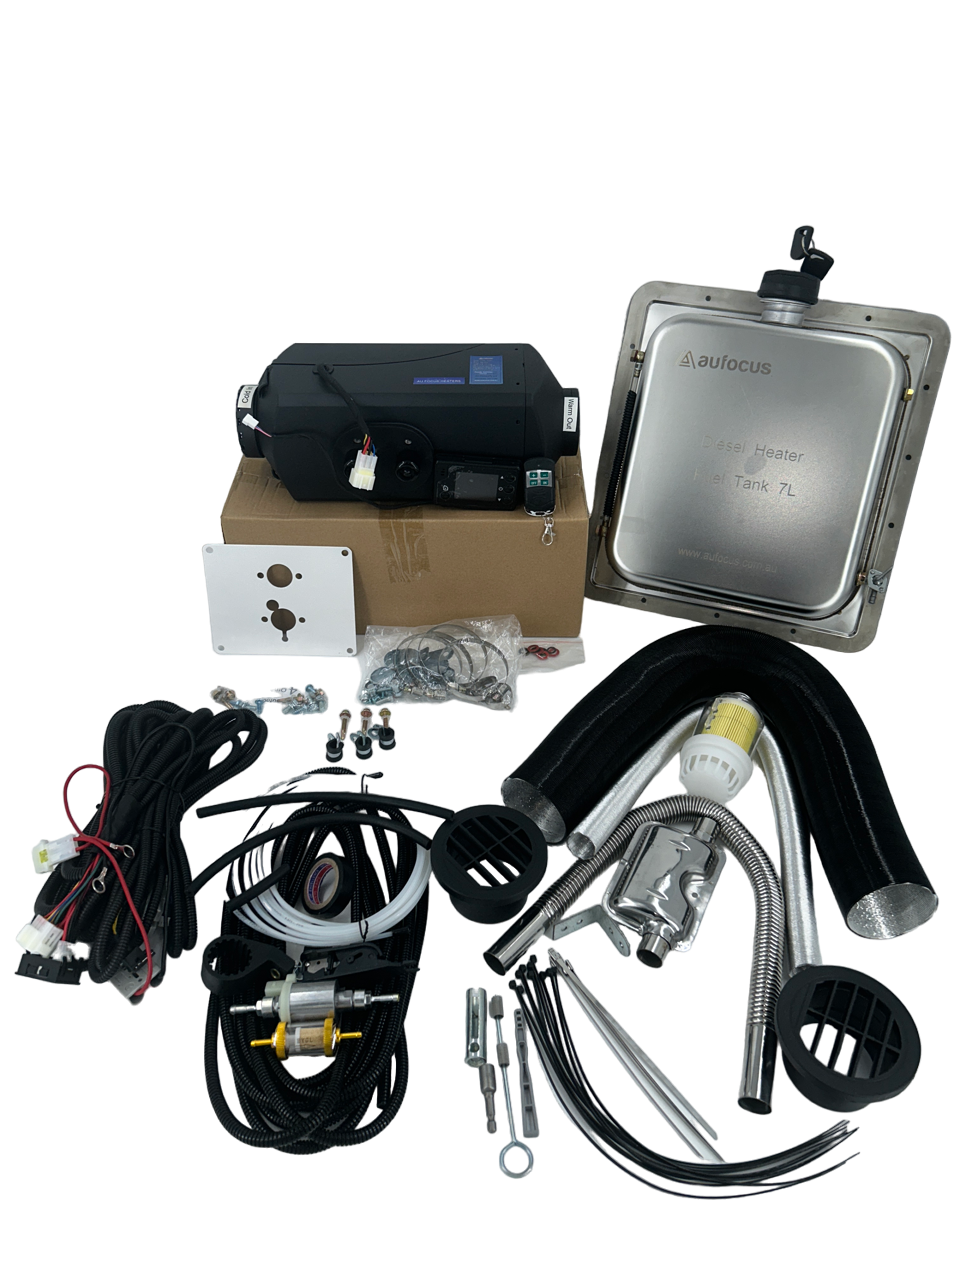 Aufocus 5KW ML Voice Diesel Heater Kit 2nd Gen — Born to Roam Shop